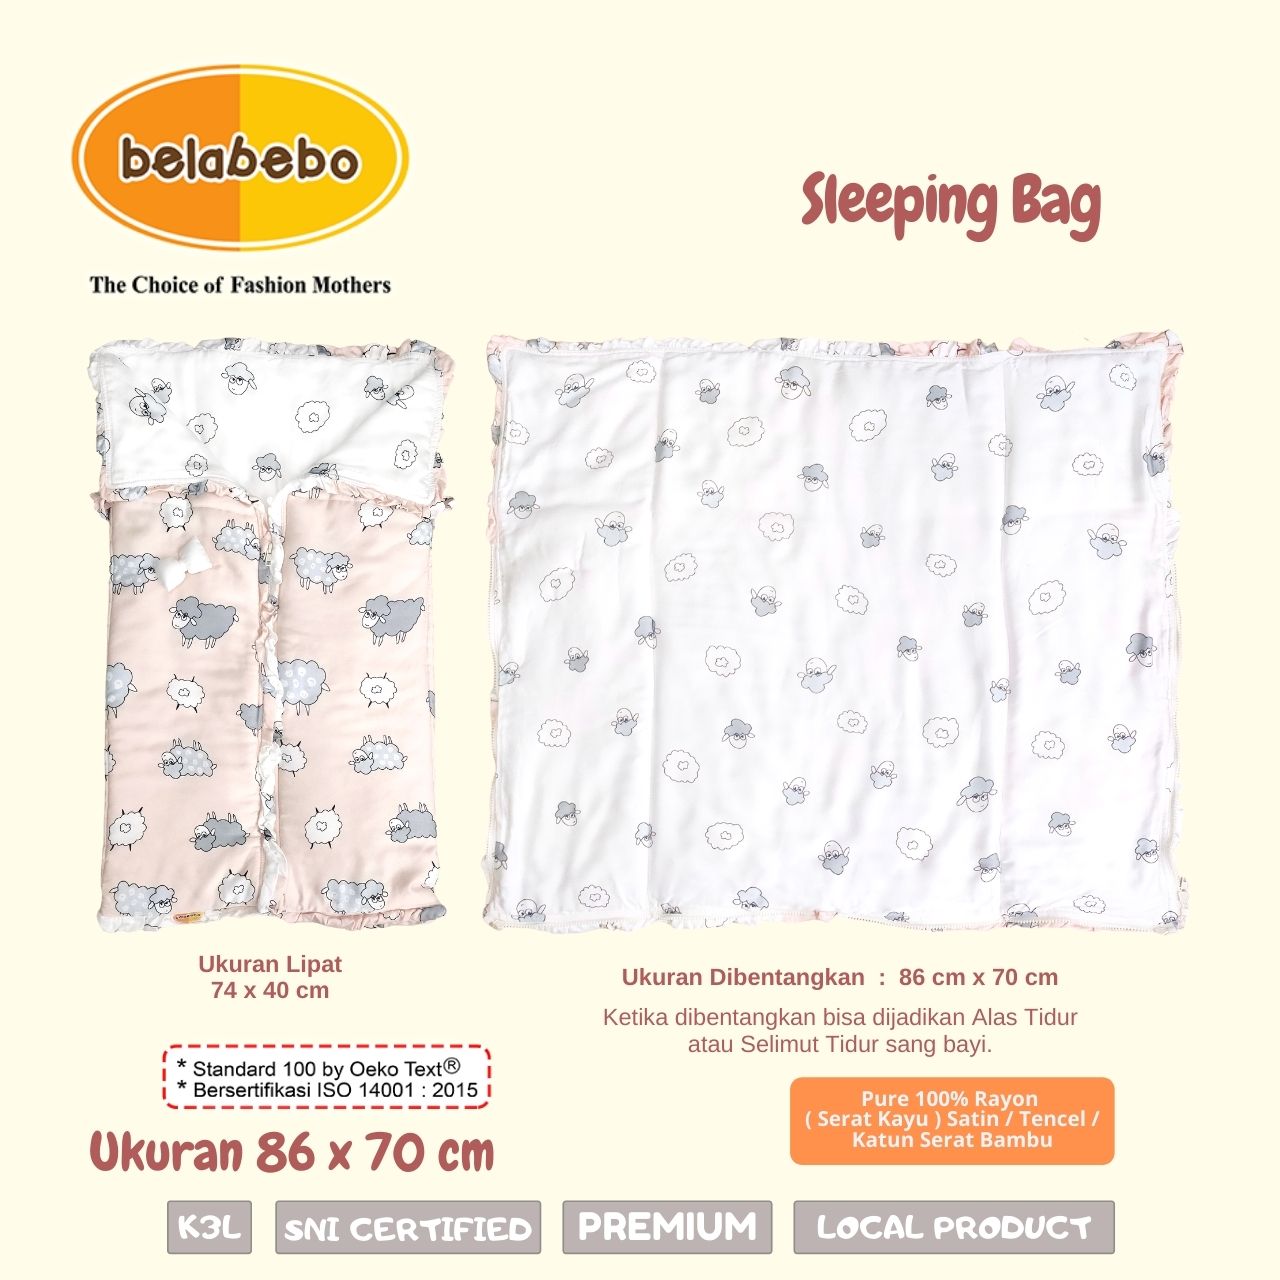 Sleeping Bag Ukuran Belabebo